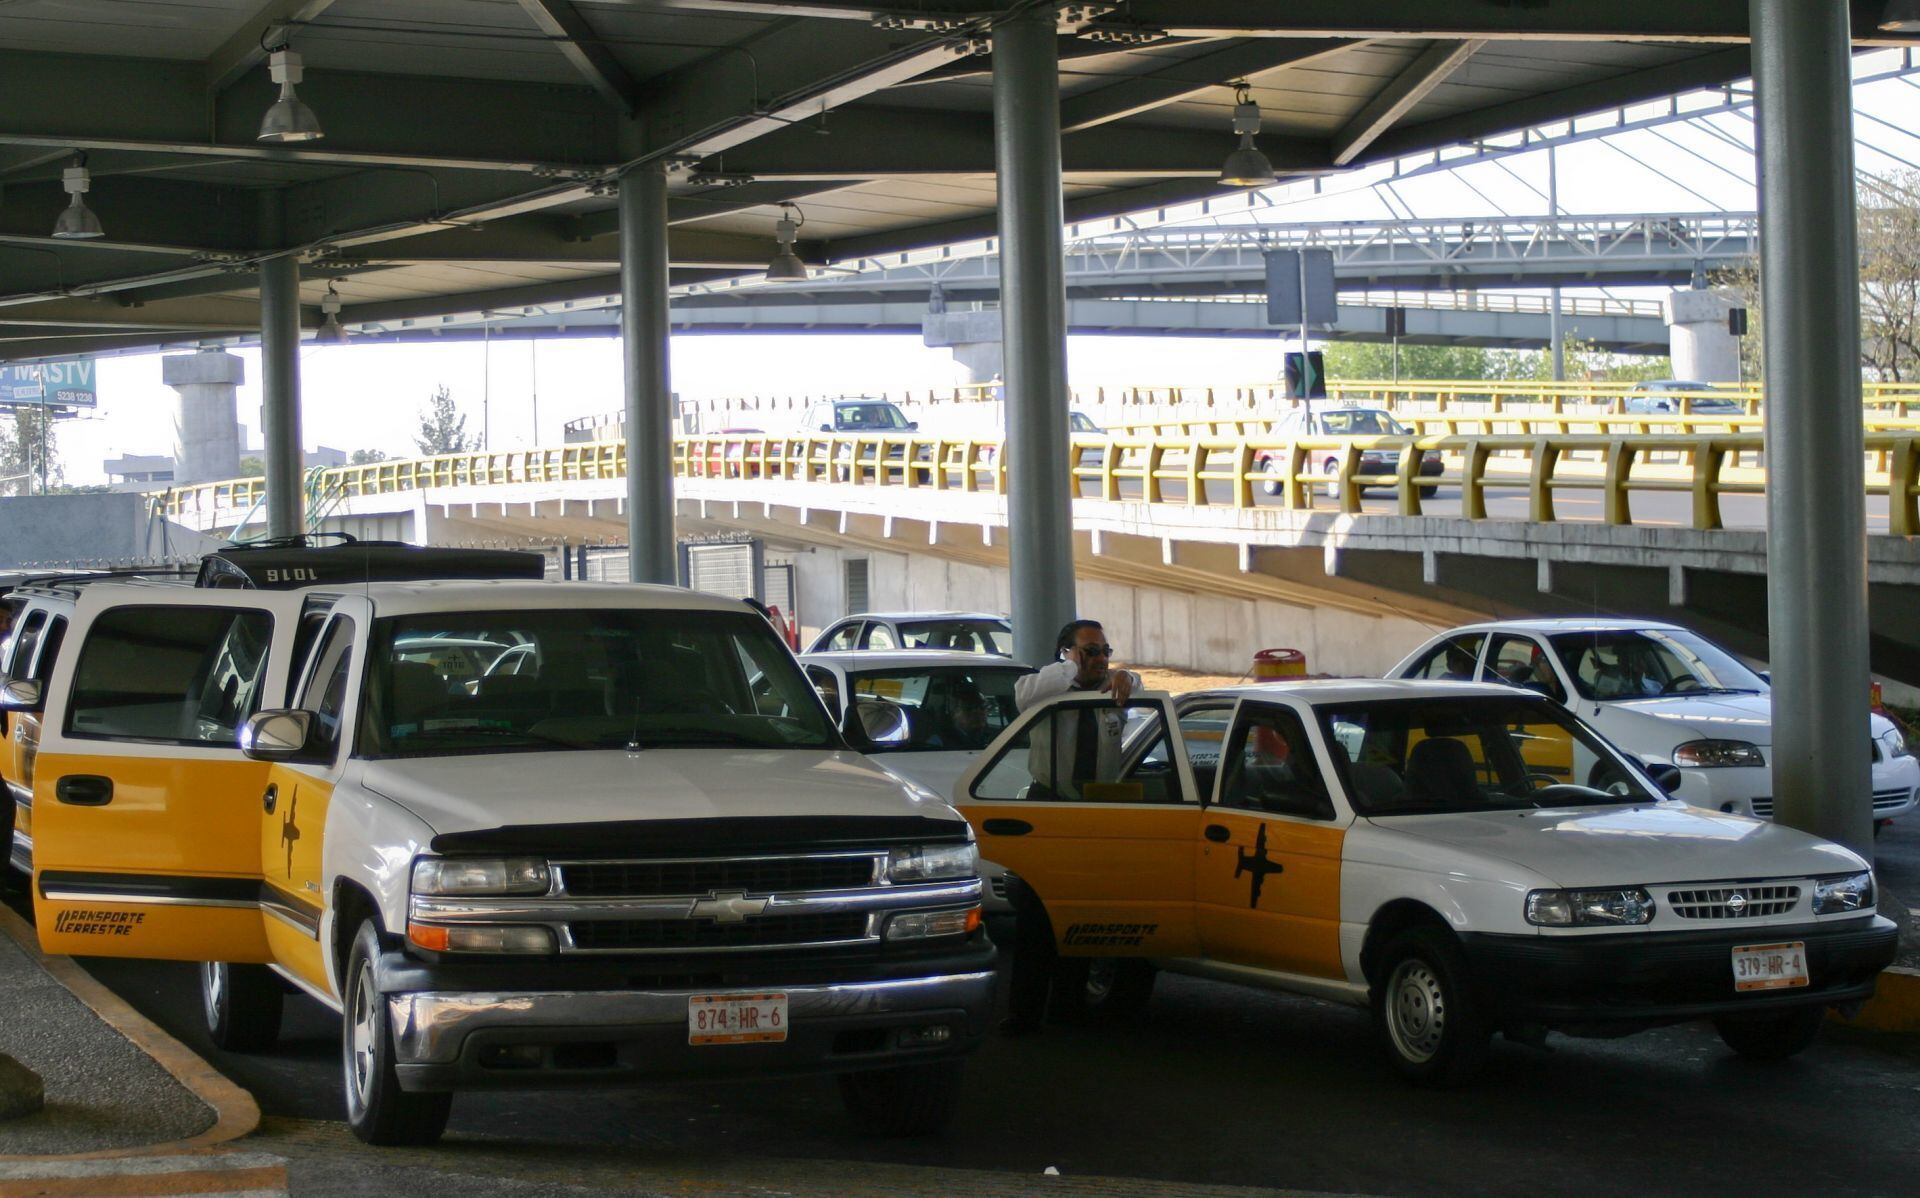 Servicio de taxis en el Aeropuerto Internacional de la Ciudad de México.